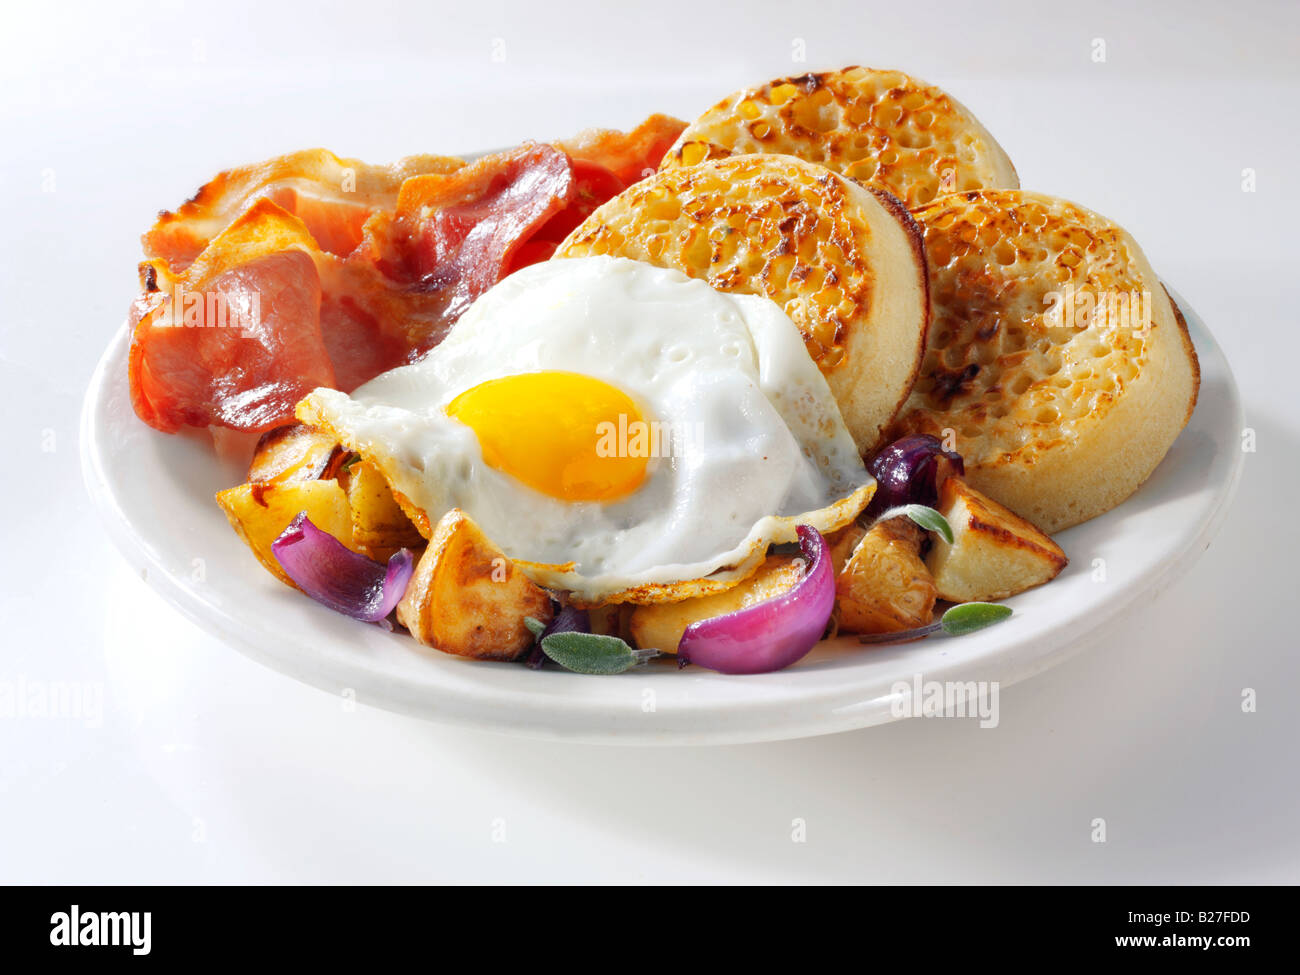 Englisches Frühstück mit Gipfeli, serviert auf einem weißen Teller in einer Tabelle einstellen - Spiegelei, Speck, Bratkartoffeln und Gipfeli Stockfoto